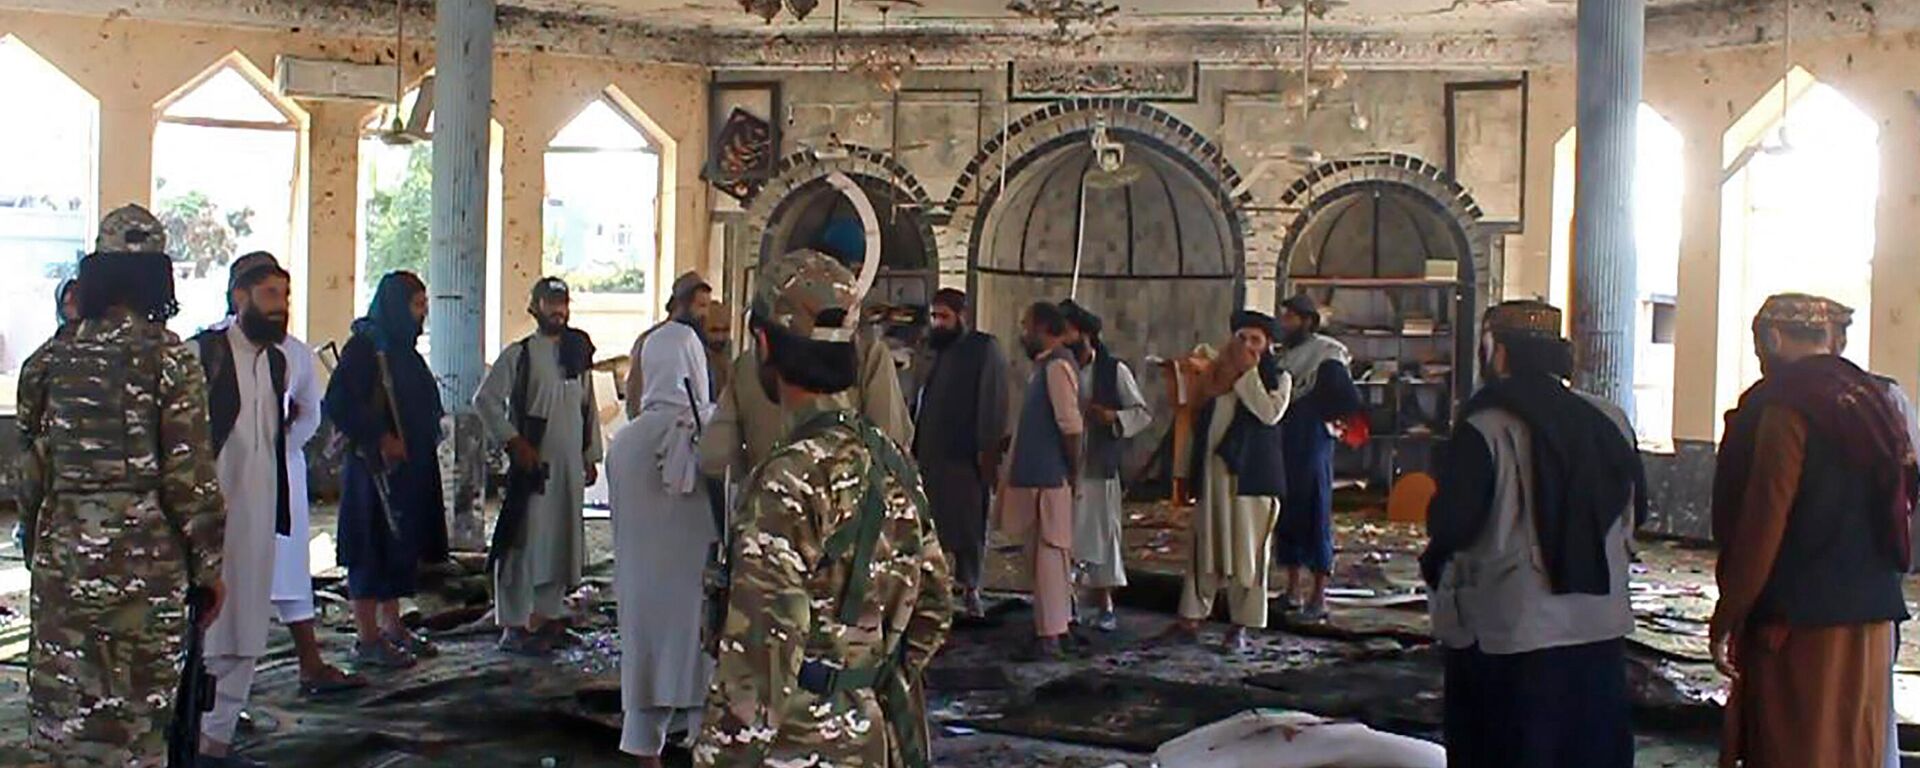 Теракт во время пятничной молитвы в афганском городе Кундуз - Sputnik Узбекистан, 1920, 09.10.2021